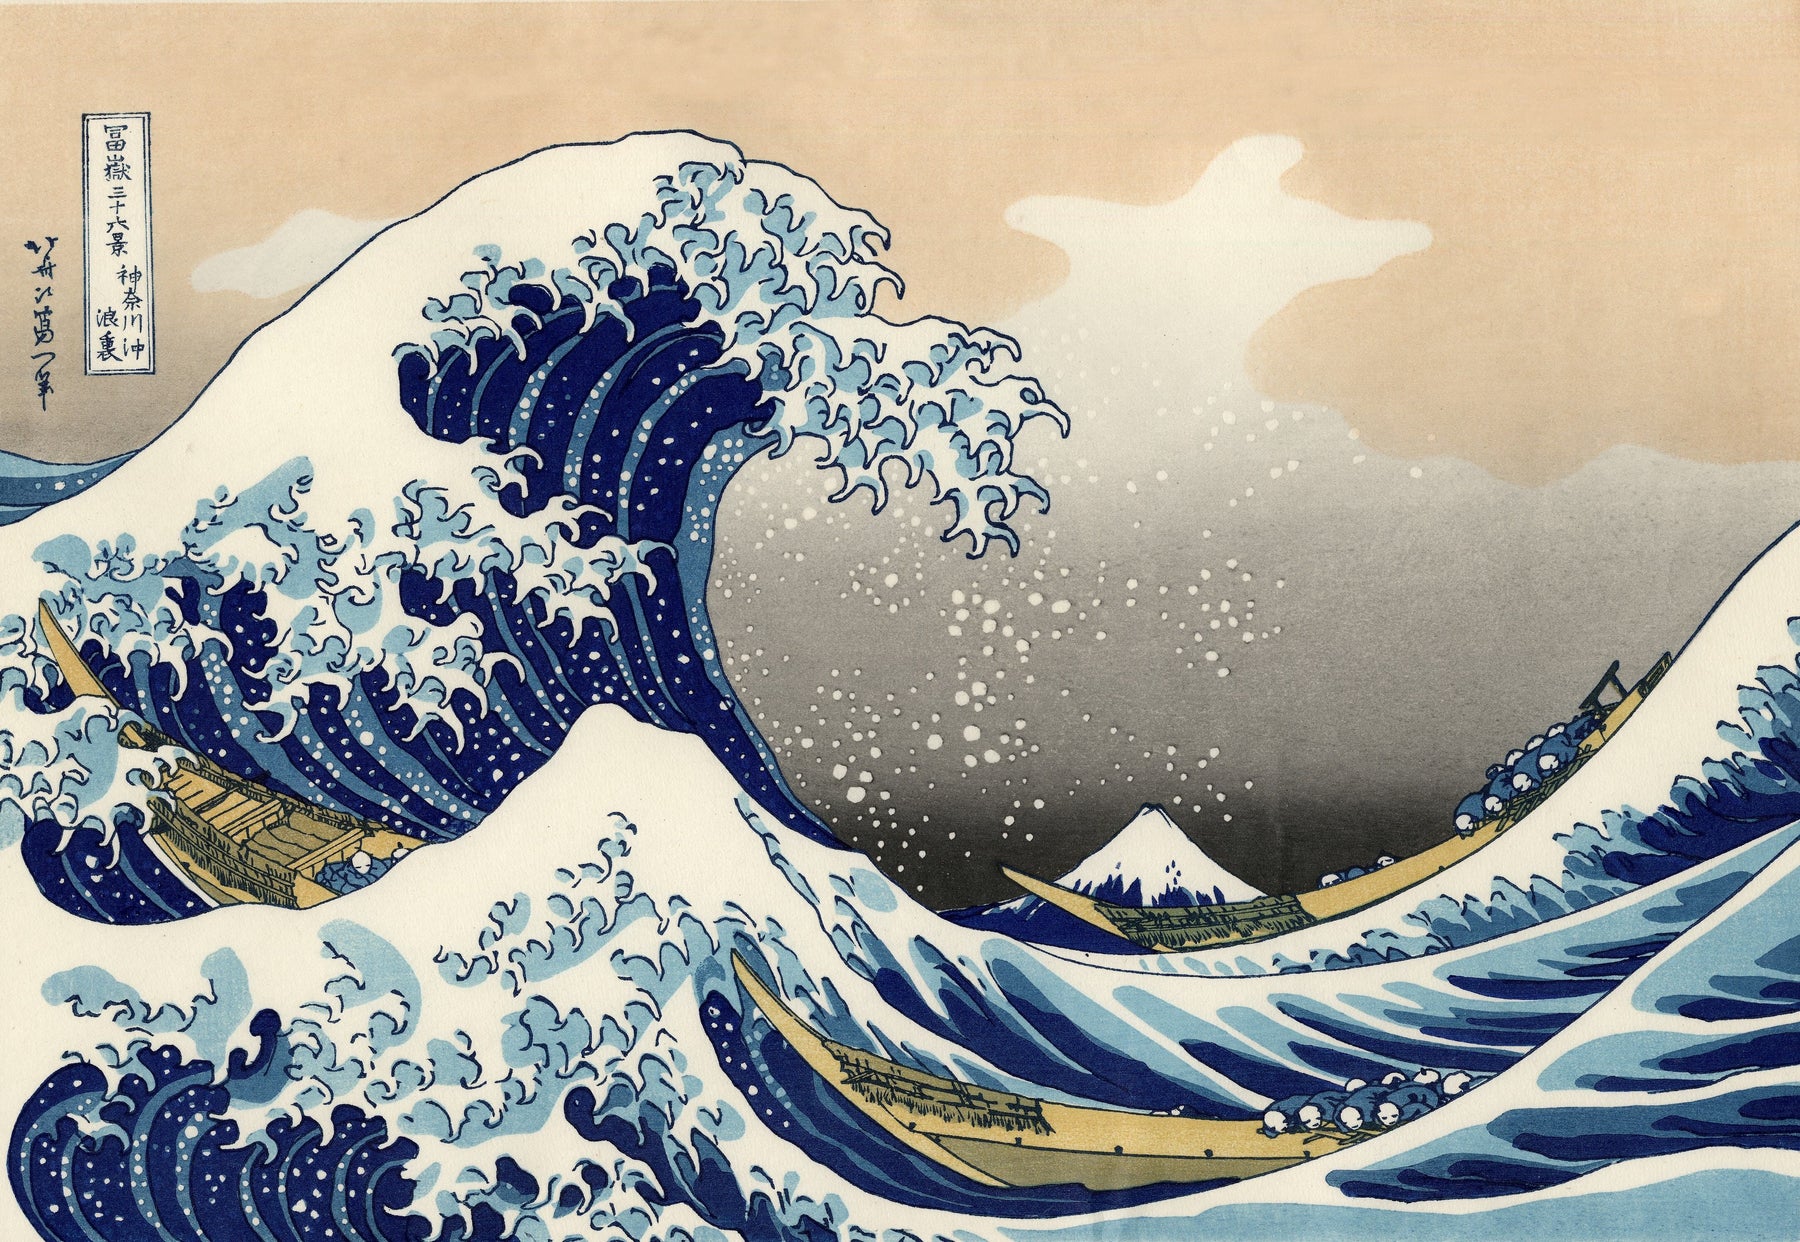 In Focus: Katsushika Hokusai